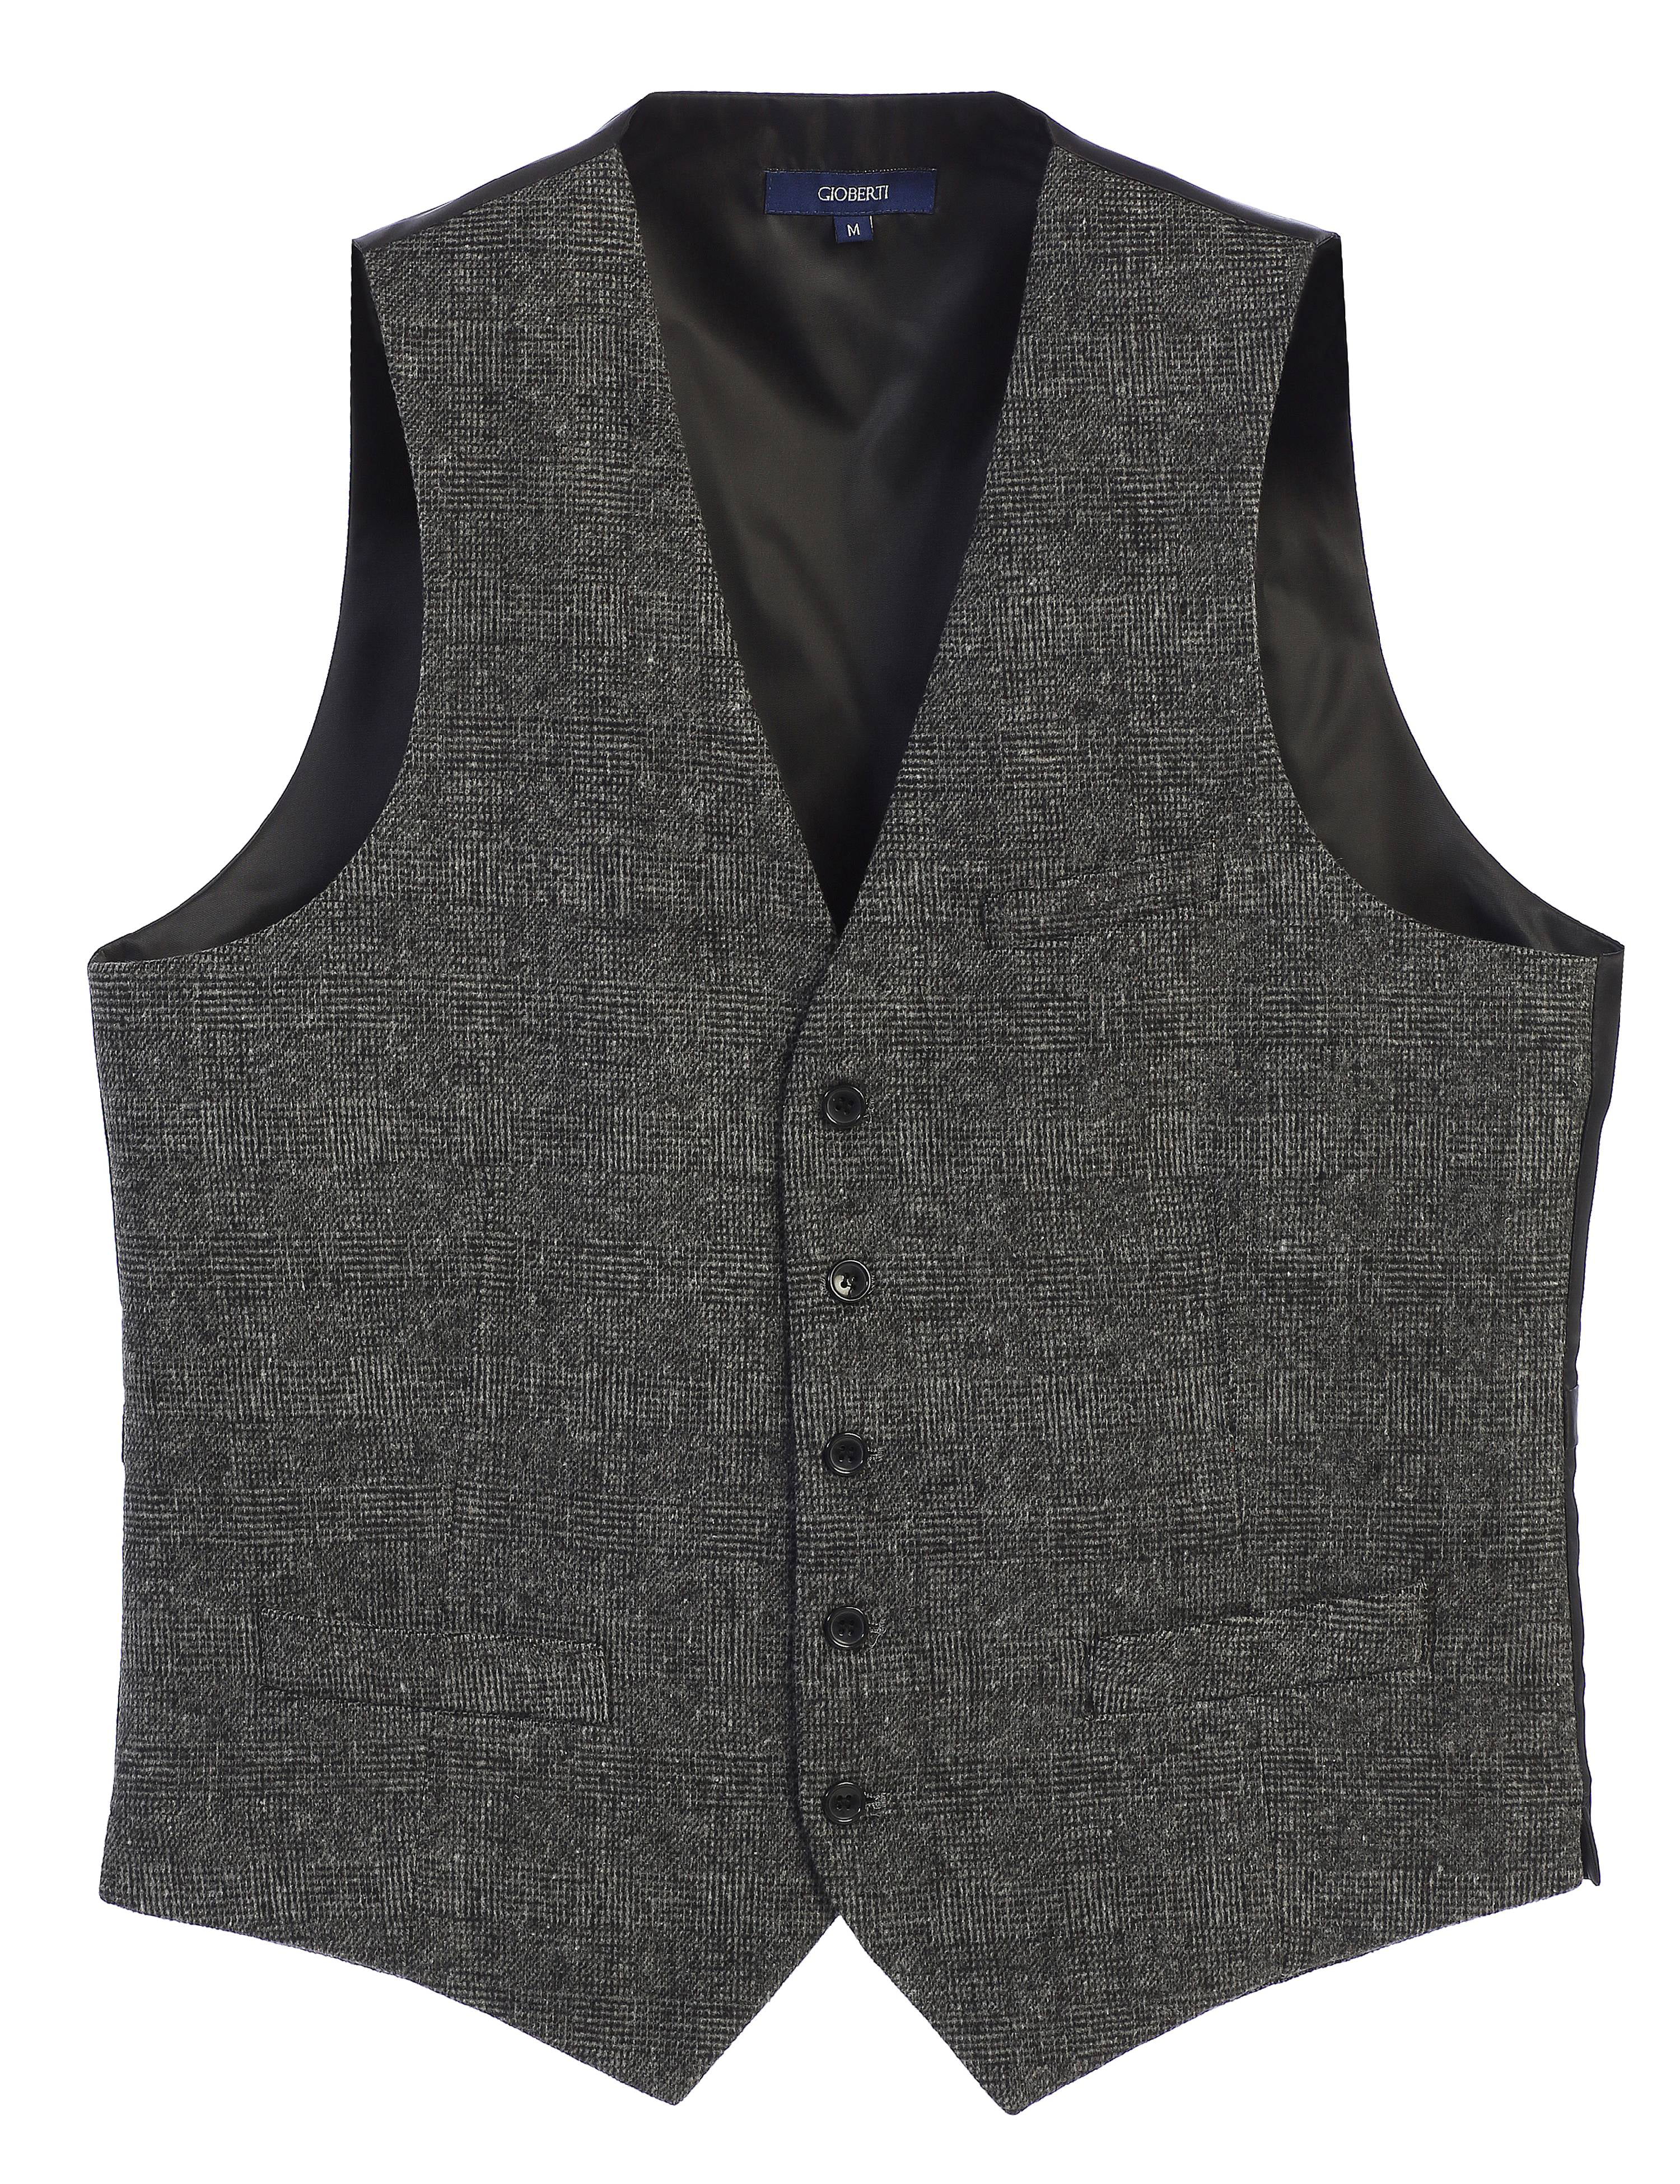 Gioberti - Gioberti Men's 5 Button Slim Fit Formal Herringbone Tweed ...